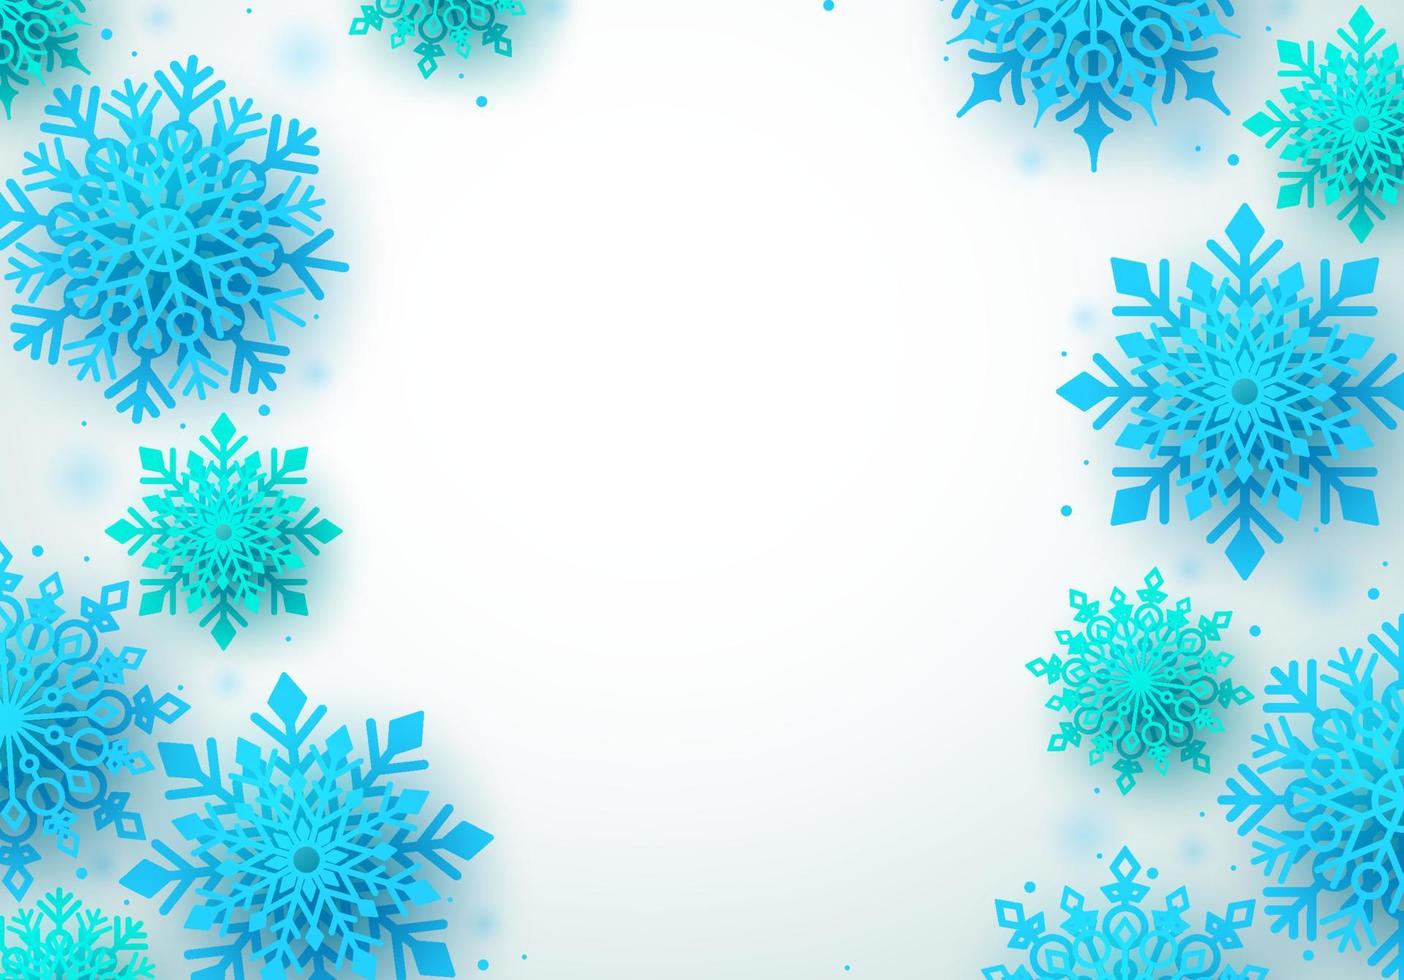 Fondo de vector de copos de nieve de invierno. Fondo de invierno blanco con copos de nieve azules y espacios en blanco vacíos para el texto. ilustración vectorial.